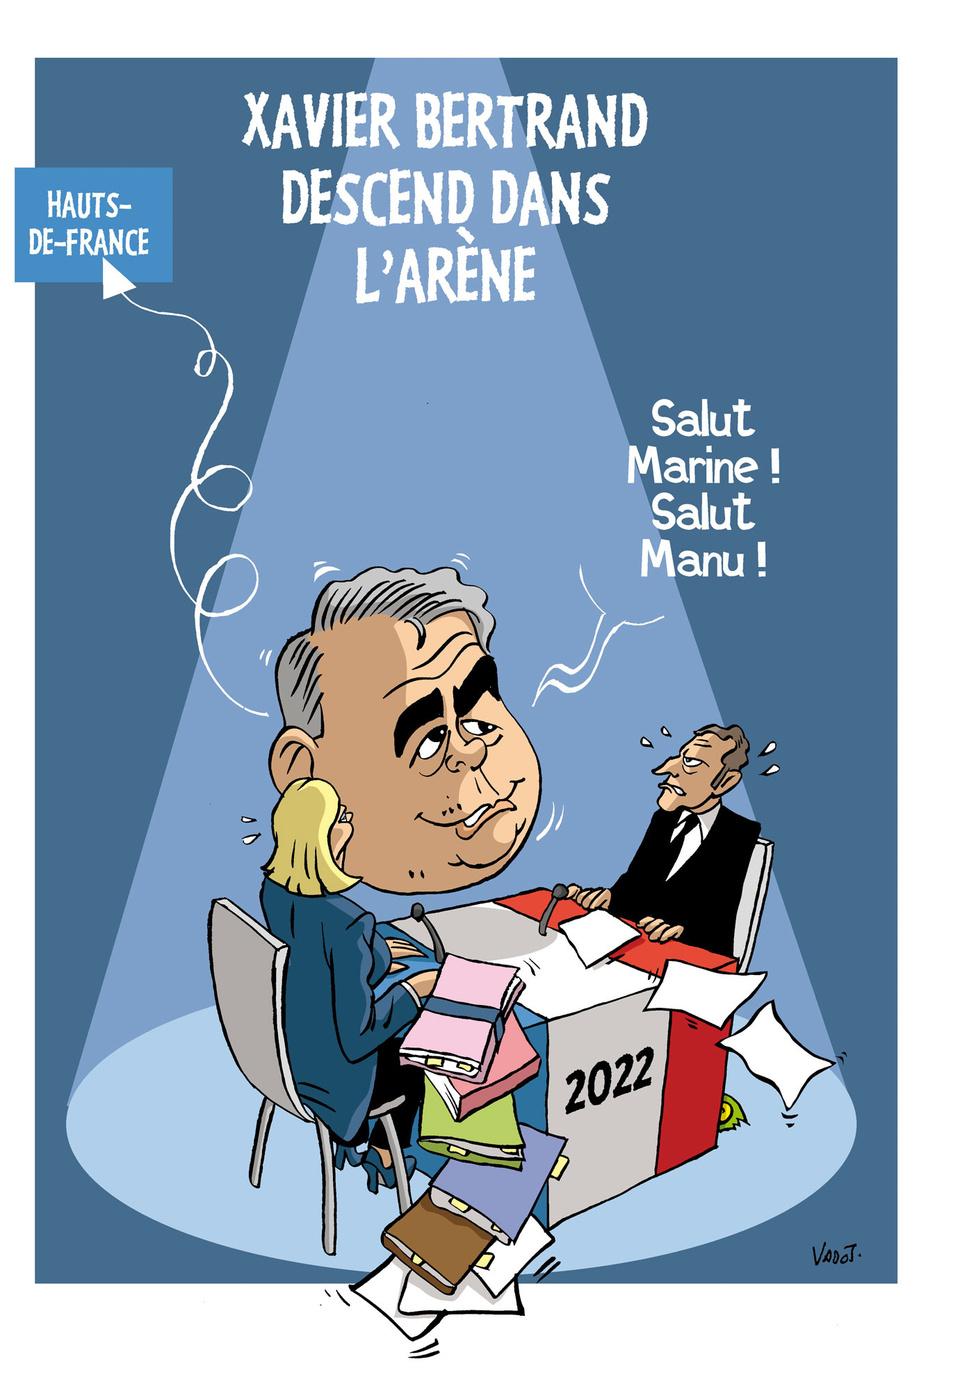 En ballotage favorable dans Hauts-de-France, Xavier Bertrand (LR) est en passe de remporter la victoire au second tour des élections régionales et se positionne en vue de la présidentielle 2022.